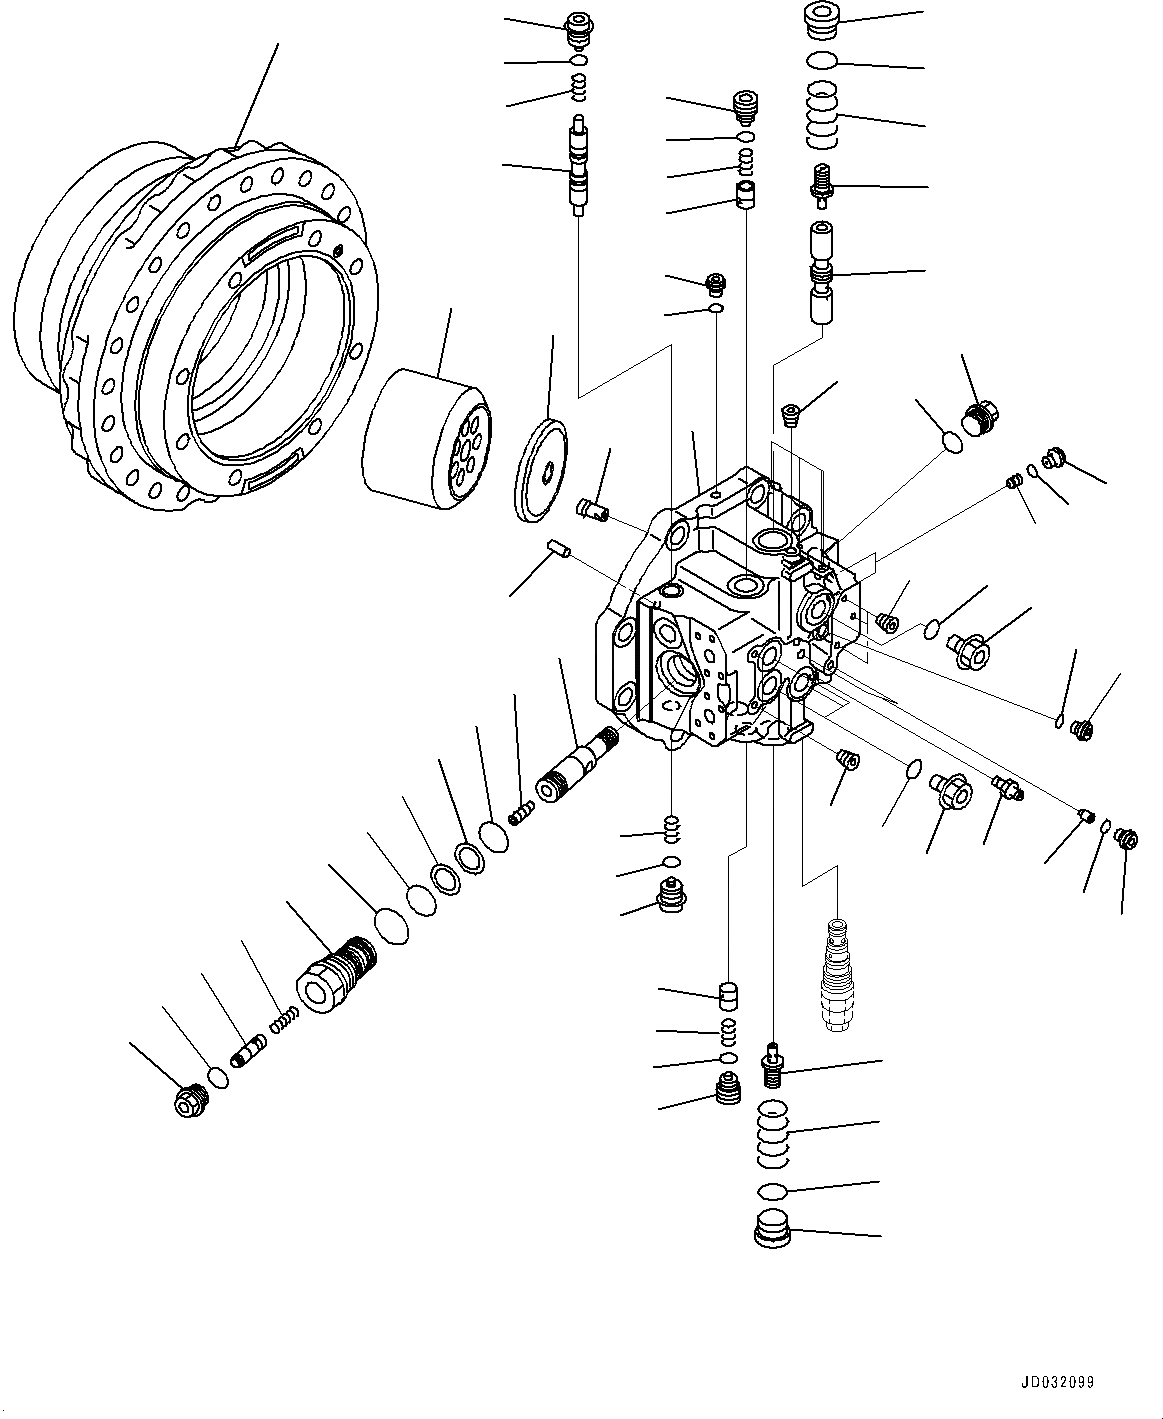 Схема запчастей Komatsu PC600LC-8E0 - ГУСЕНИЧНАЯ РАМА, МОТОР ХОДА , ЛЕВ. (/) (№-) ГУСЕНИЧНАЯ РАМА, ЗАЩИТА ОПОРНЫХ КАТКОВ